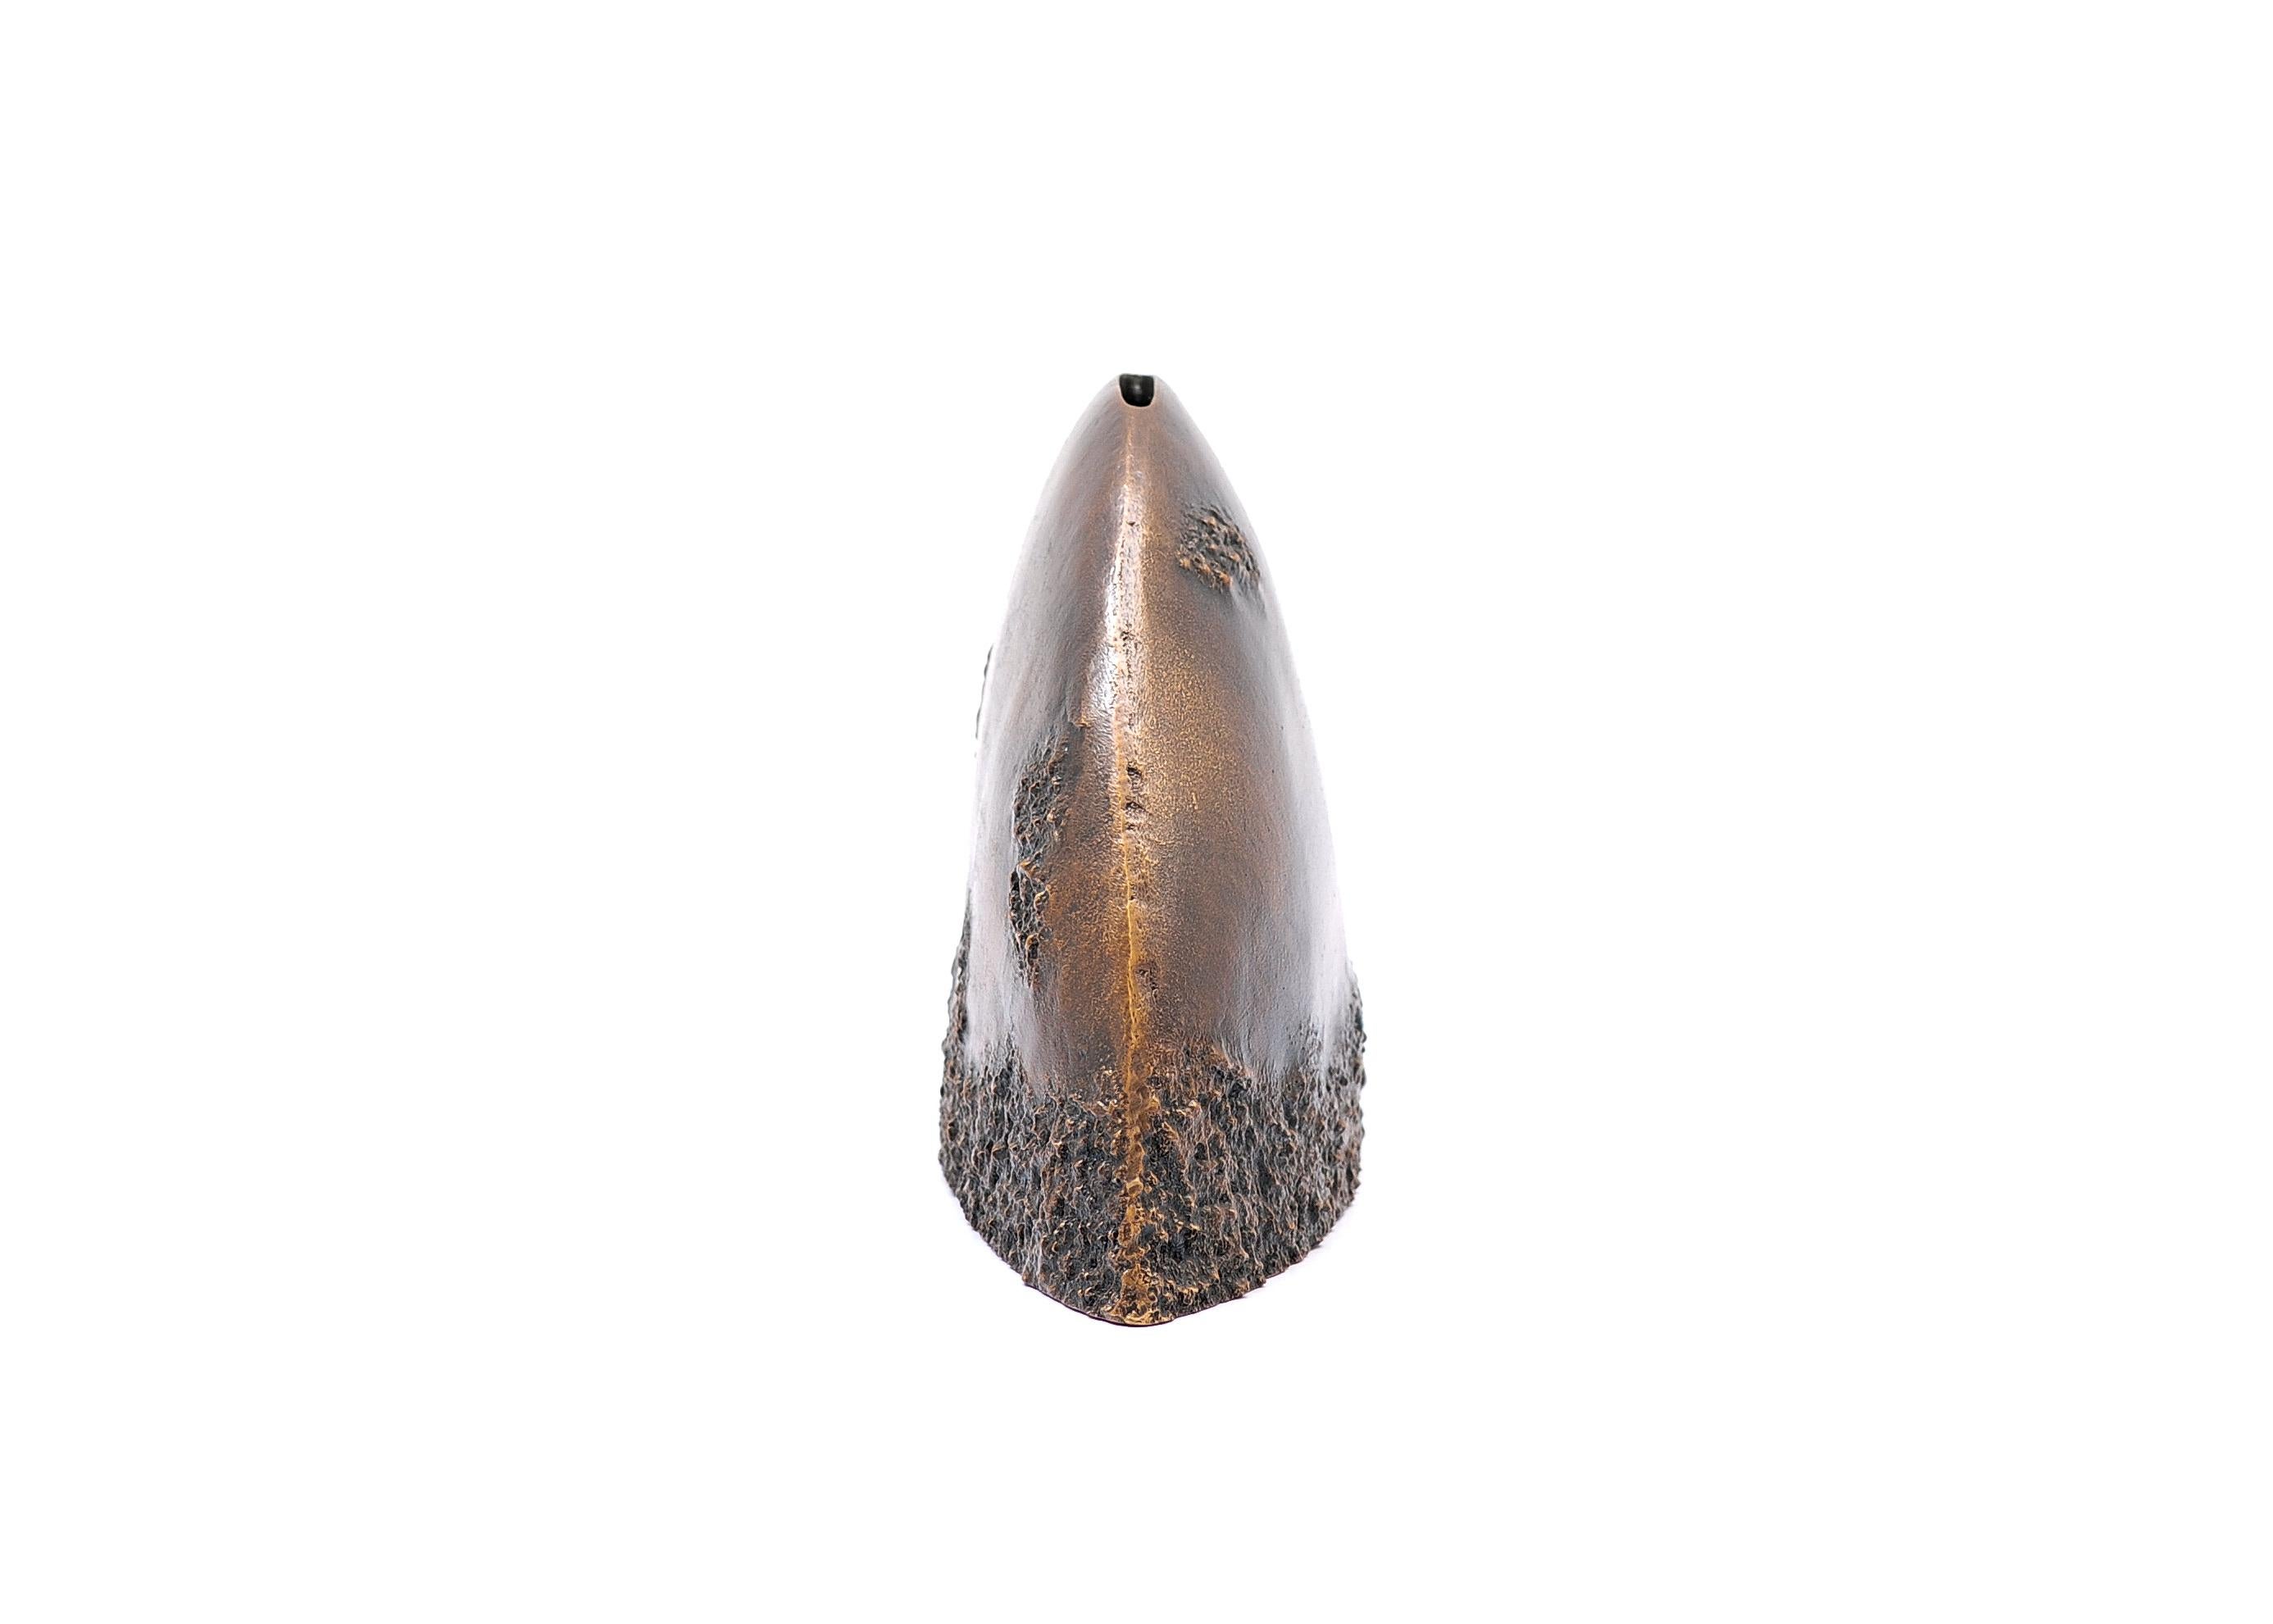 Vase in dark bronze by FAKASAKA Design
Dimensions: W 34 x D 8 x H 17.5 cm
Materials: Dark bronze.
 